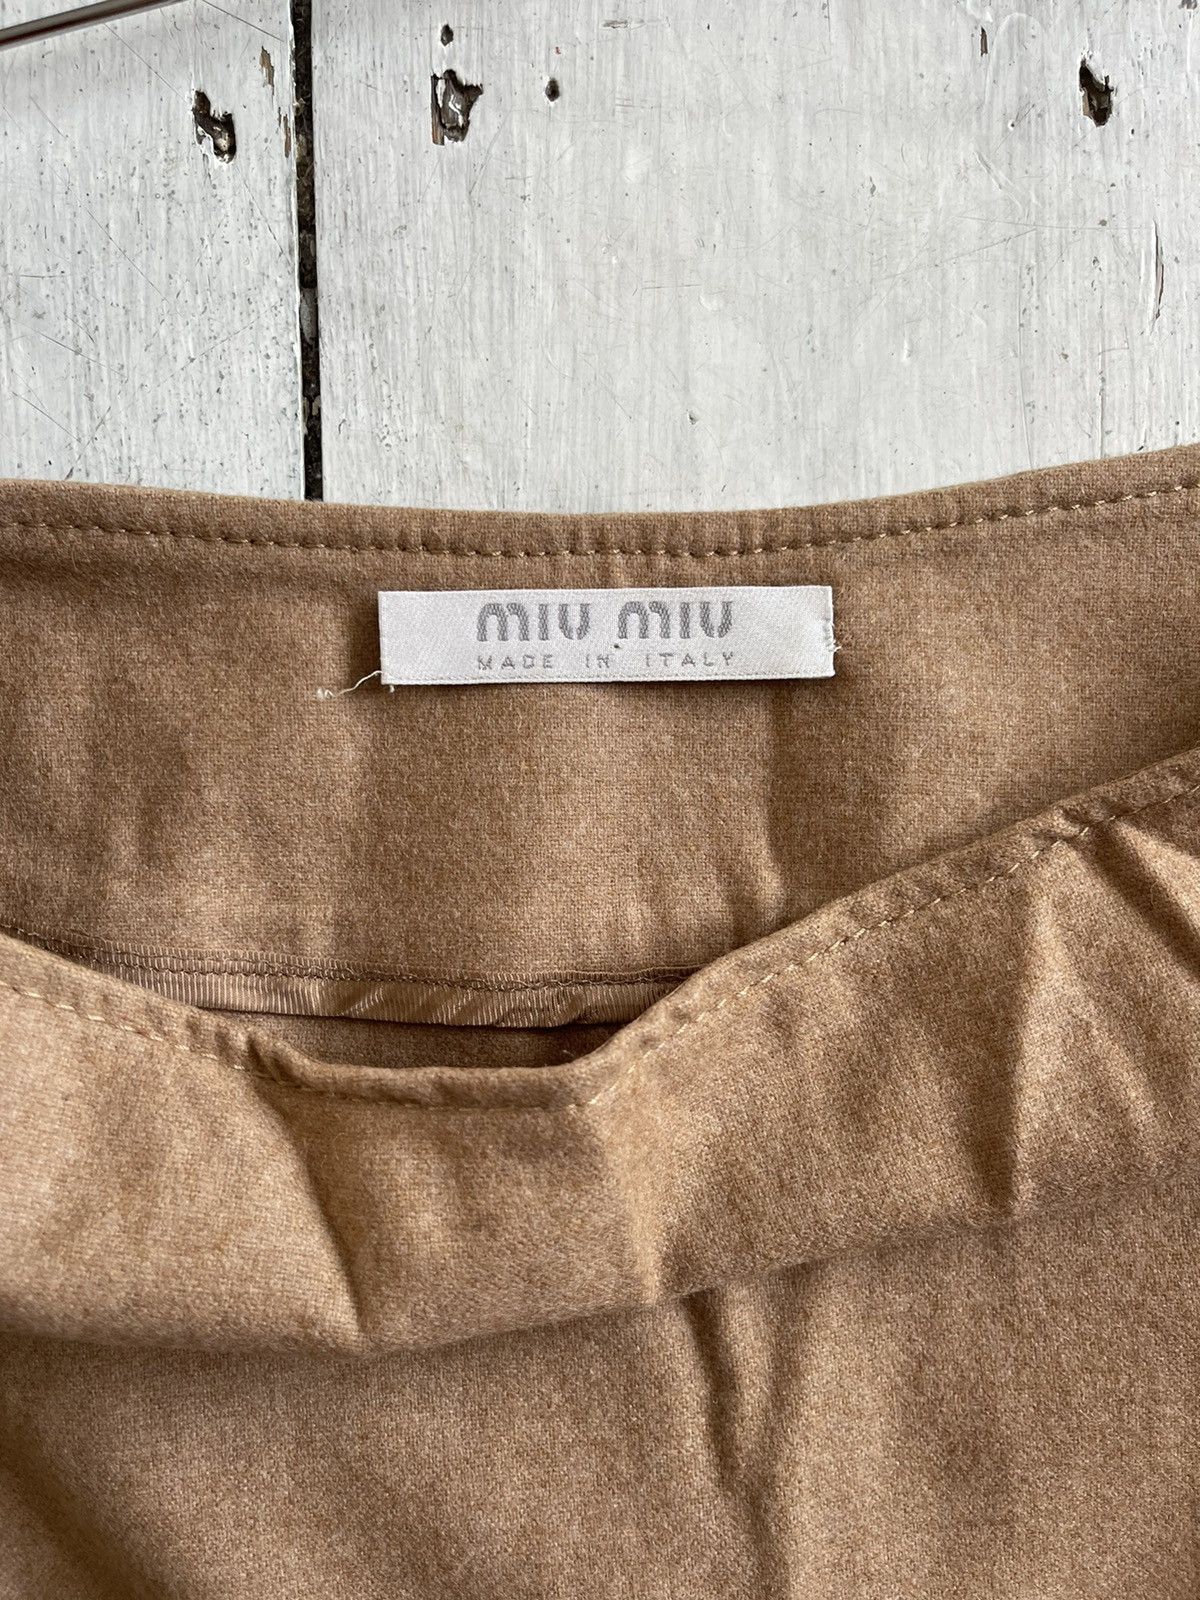 Miu Miu Vintage Miu Miu FW 1999 midi skirt Size 28" / US 6 / IT 42 - 3 Thumbnail